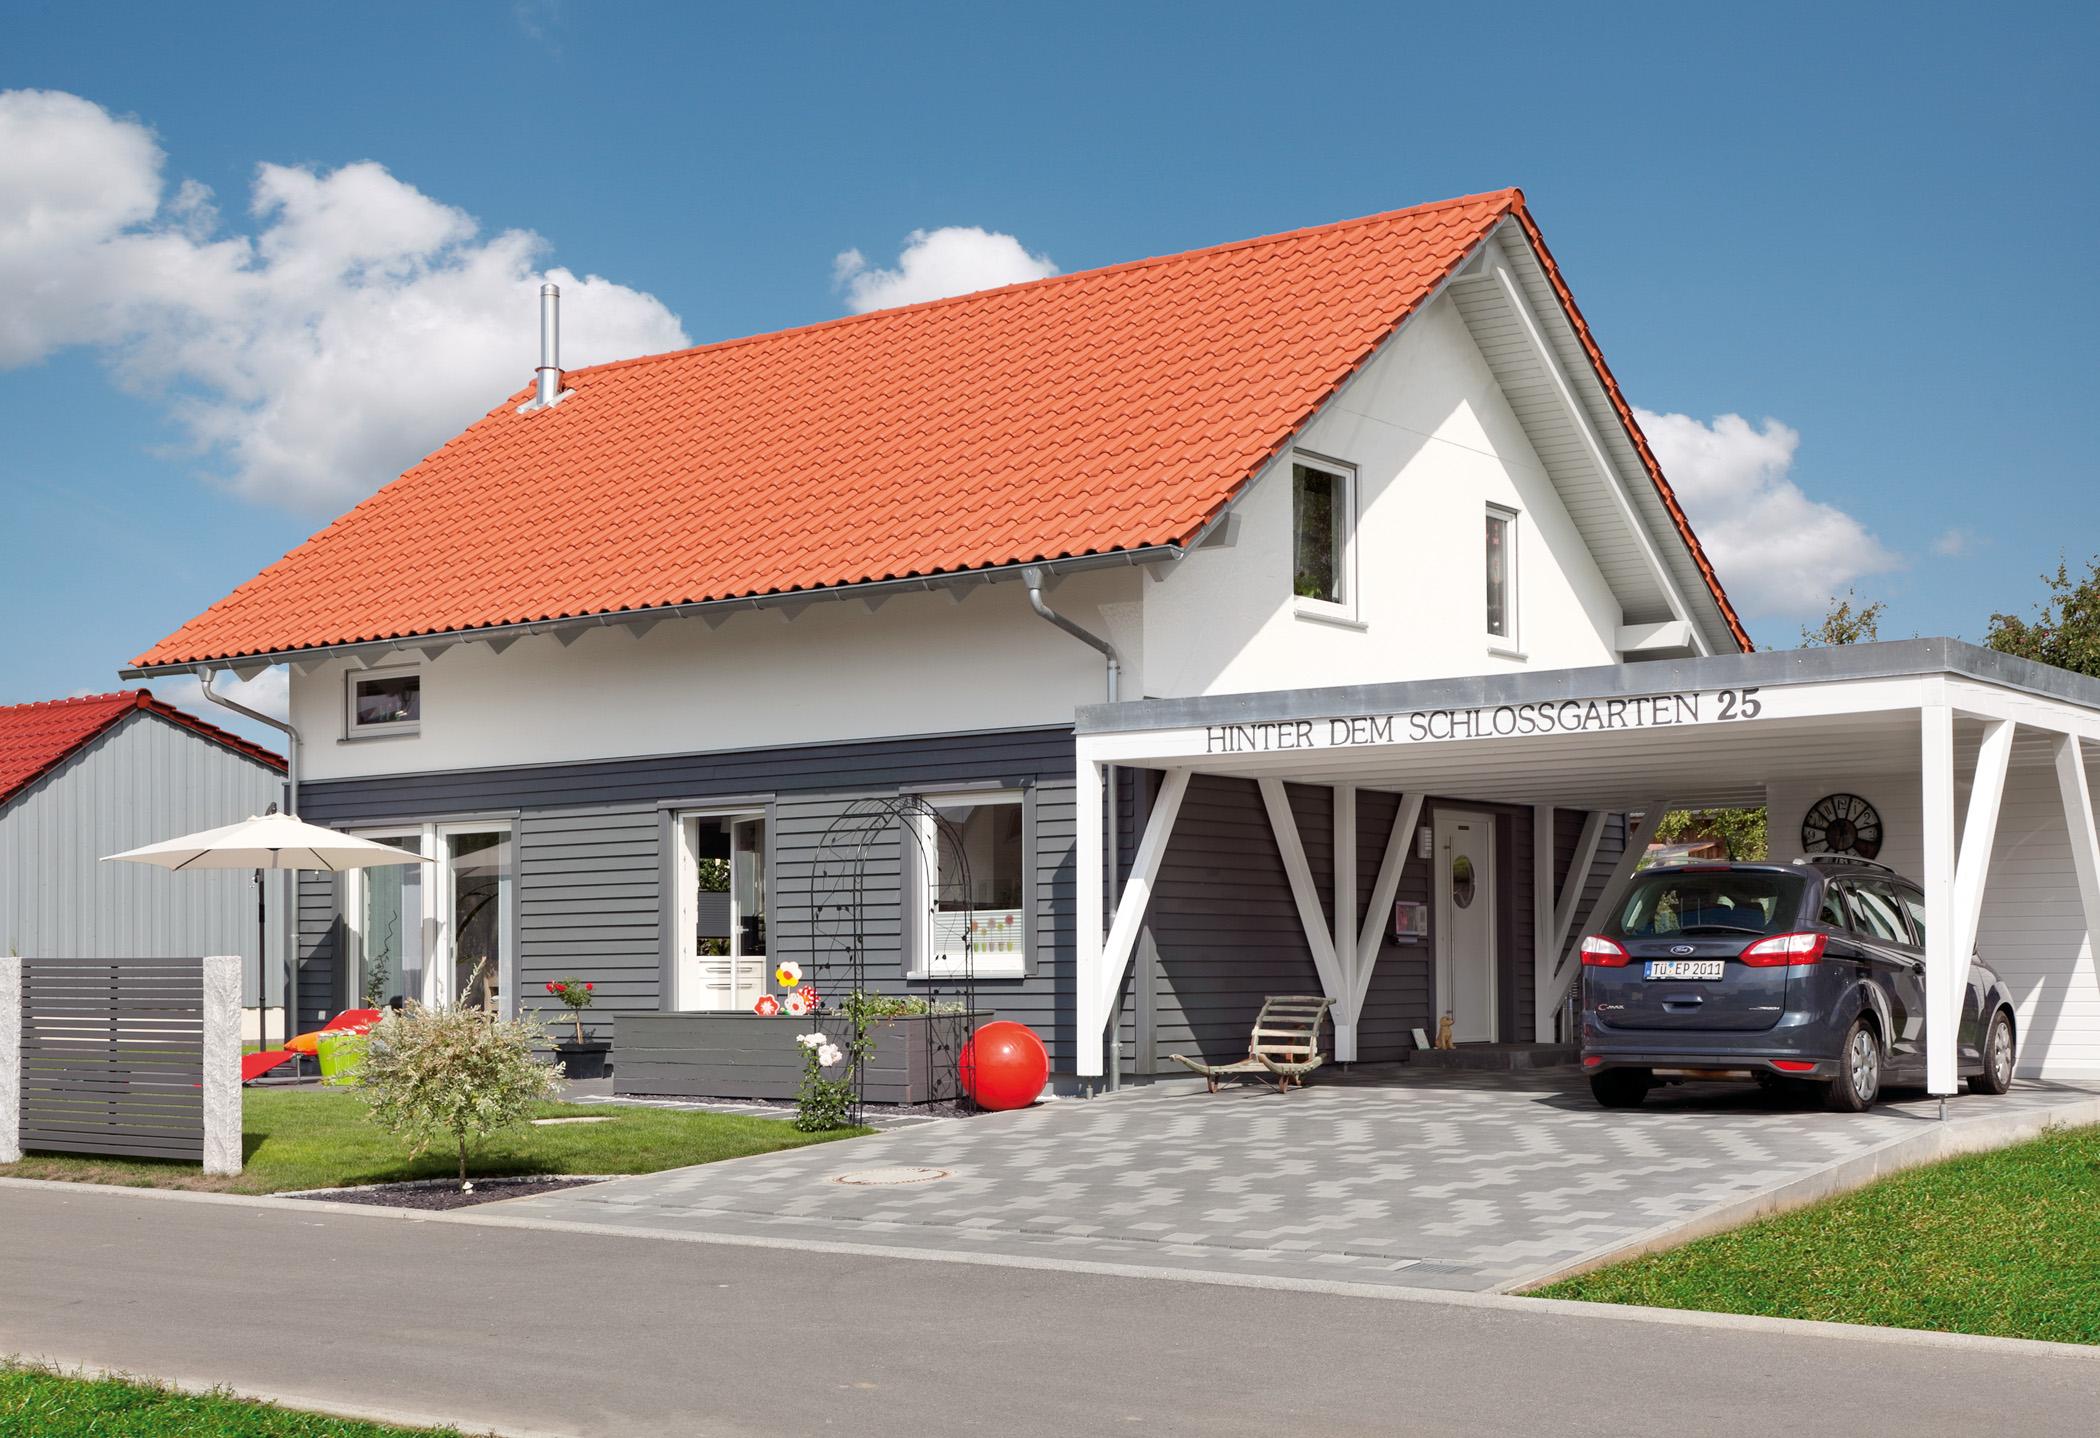 Familienhaus mit Einfahrt #gartenzaun #carport #vorgartengestaltung #garage ©SchwörerHaus/J.Lippert